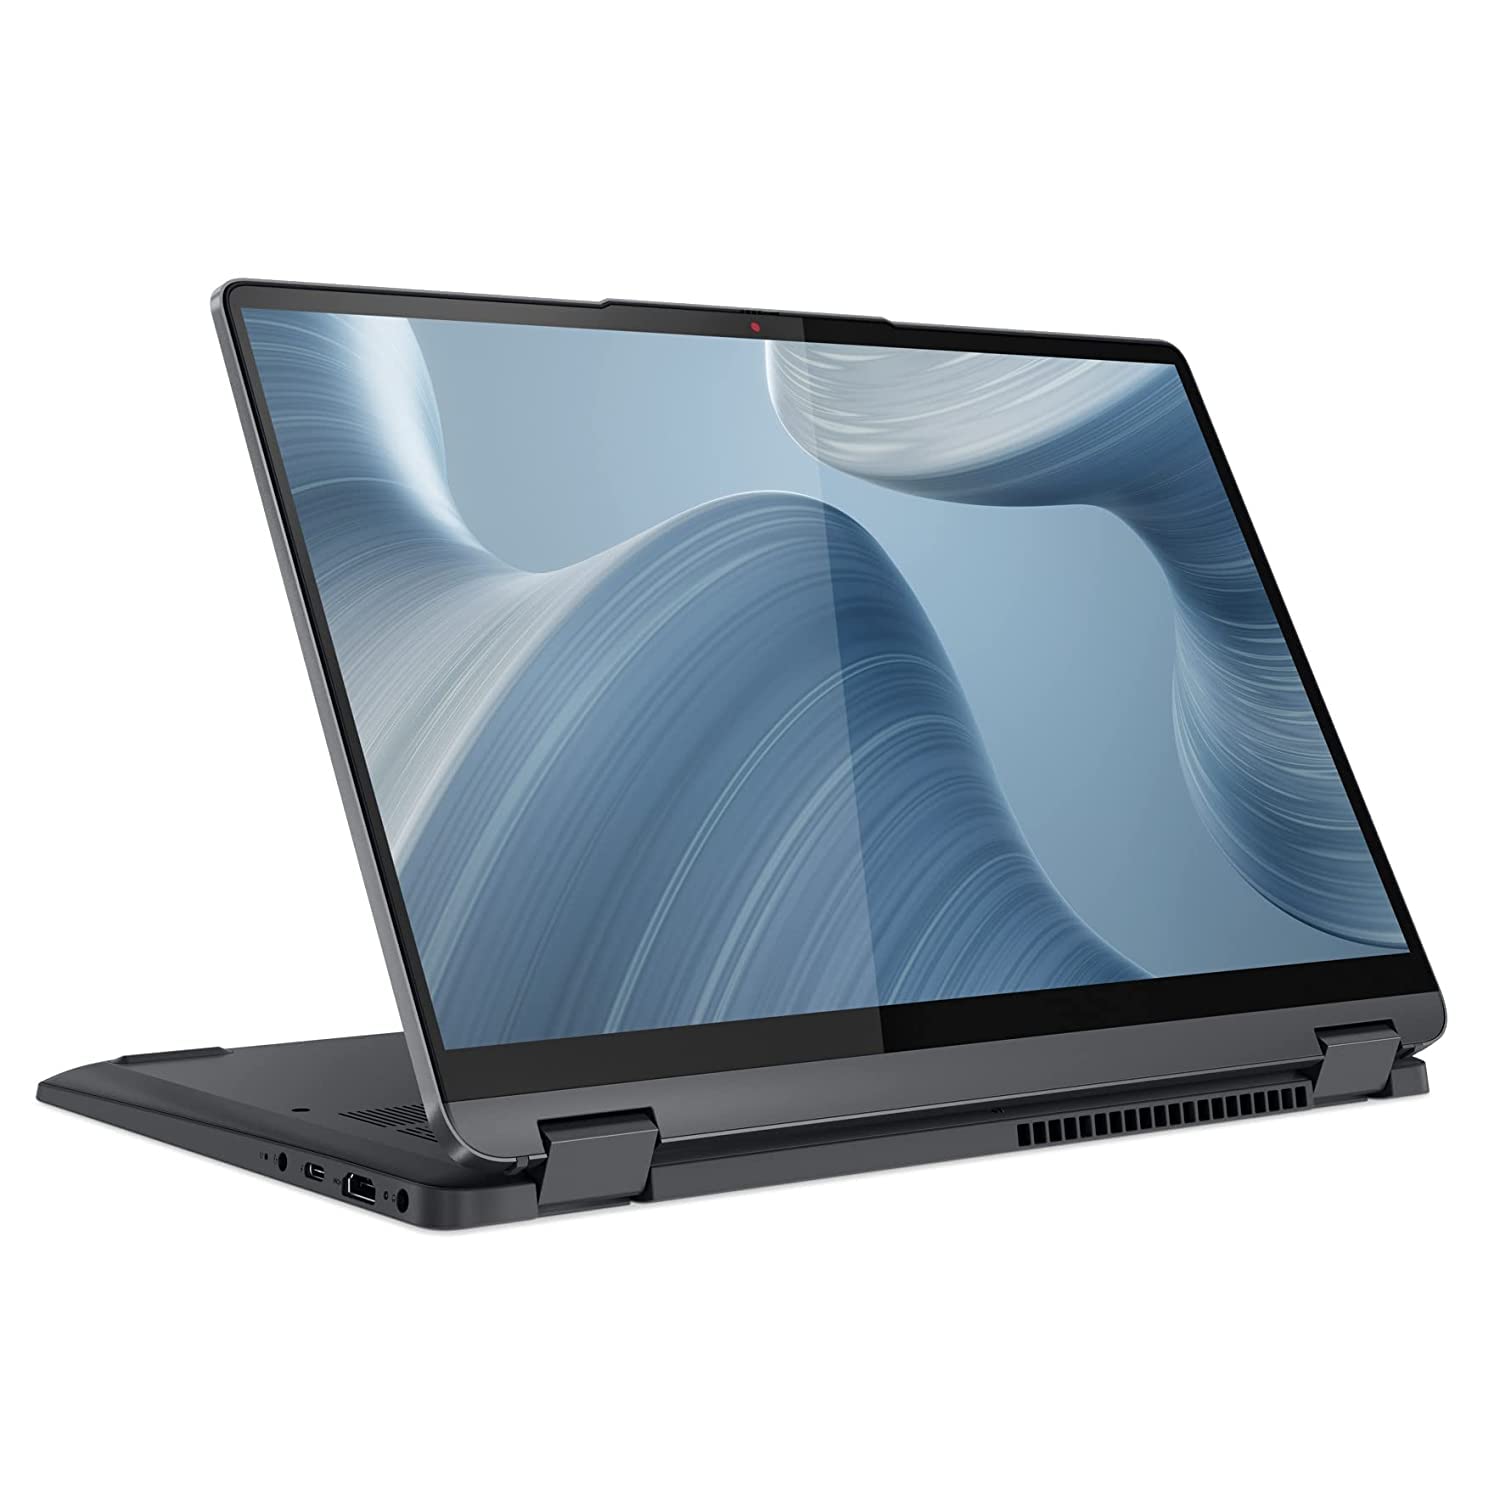 Lenovo Flex 5 2-in-1 14in WUXGA 2-in-1 Touchscreen Laptop AMD Ryzen 7 Octa-core (8 Core) up to 4.3 GHz 16GB DDR4 512GB SSD WiFi + BT Backlit Keyboard HDMI W11 iSlik Pen (Flex5 - Renewed)